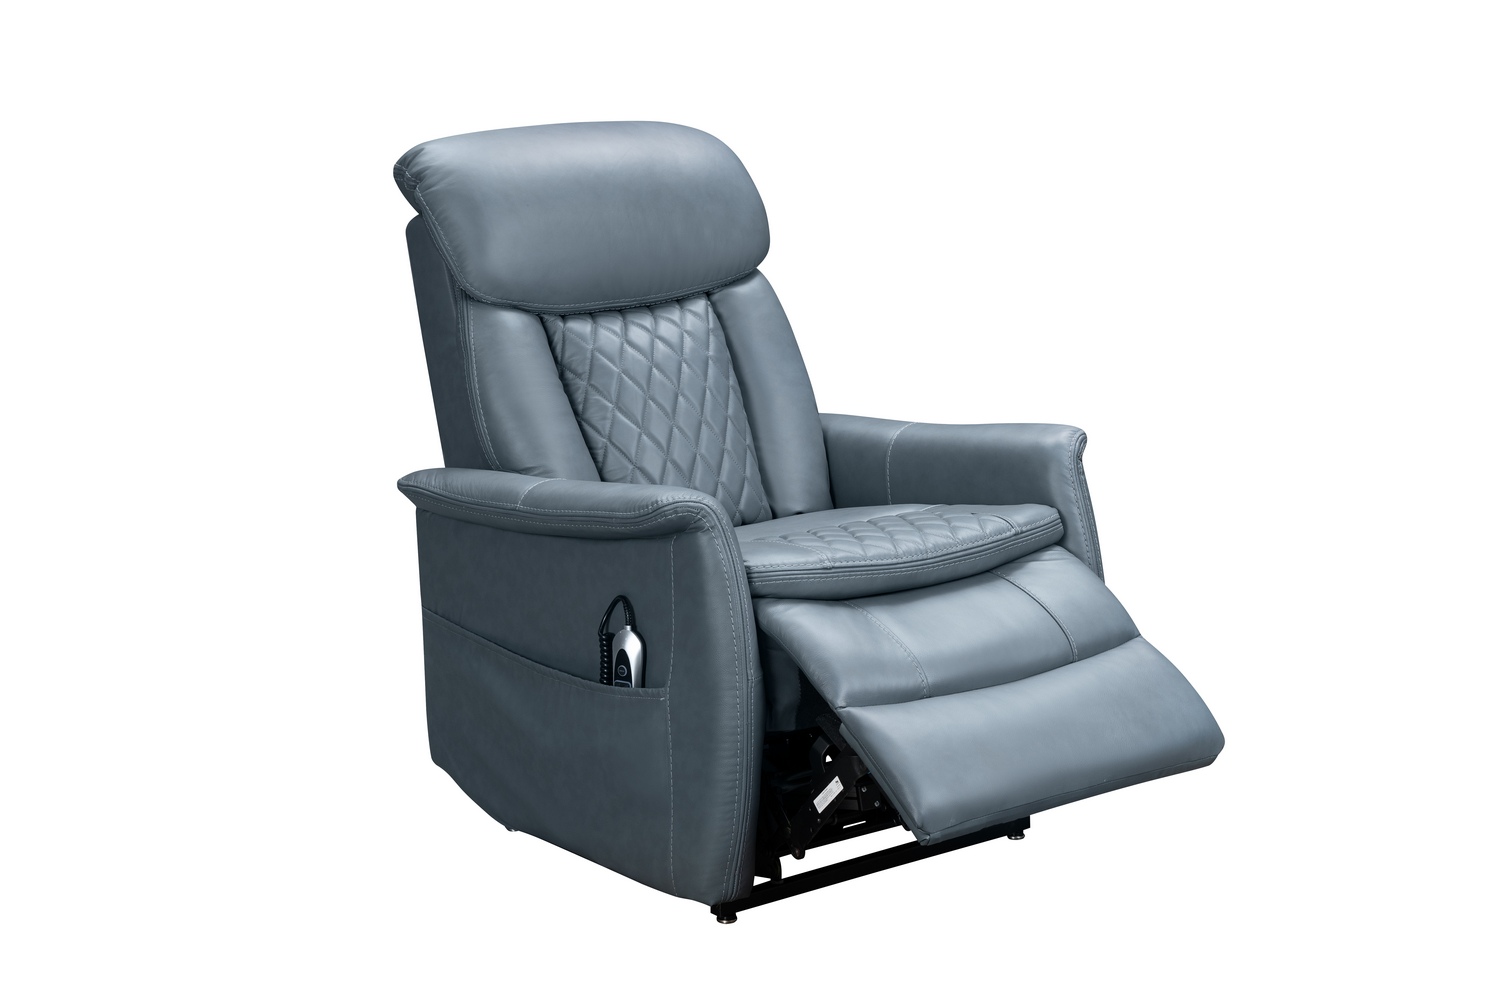 Barcalounger Lauren Lift Chair Recliner Chair with Power Head Rest, Power Lumbar and Lay Flat Mechanism - Masen Bluegray/Leather Match